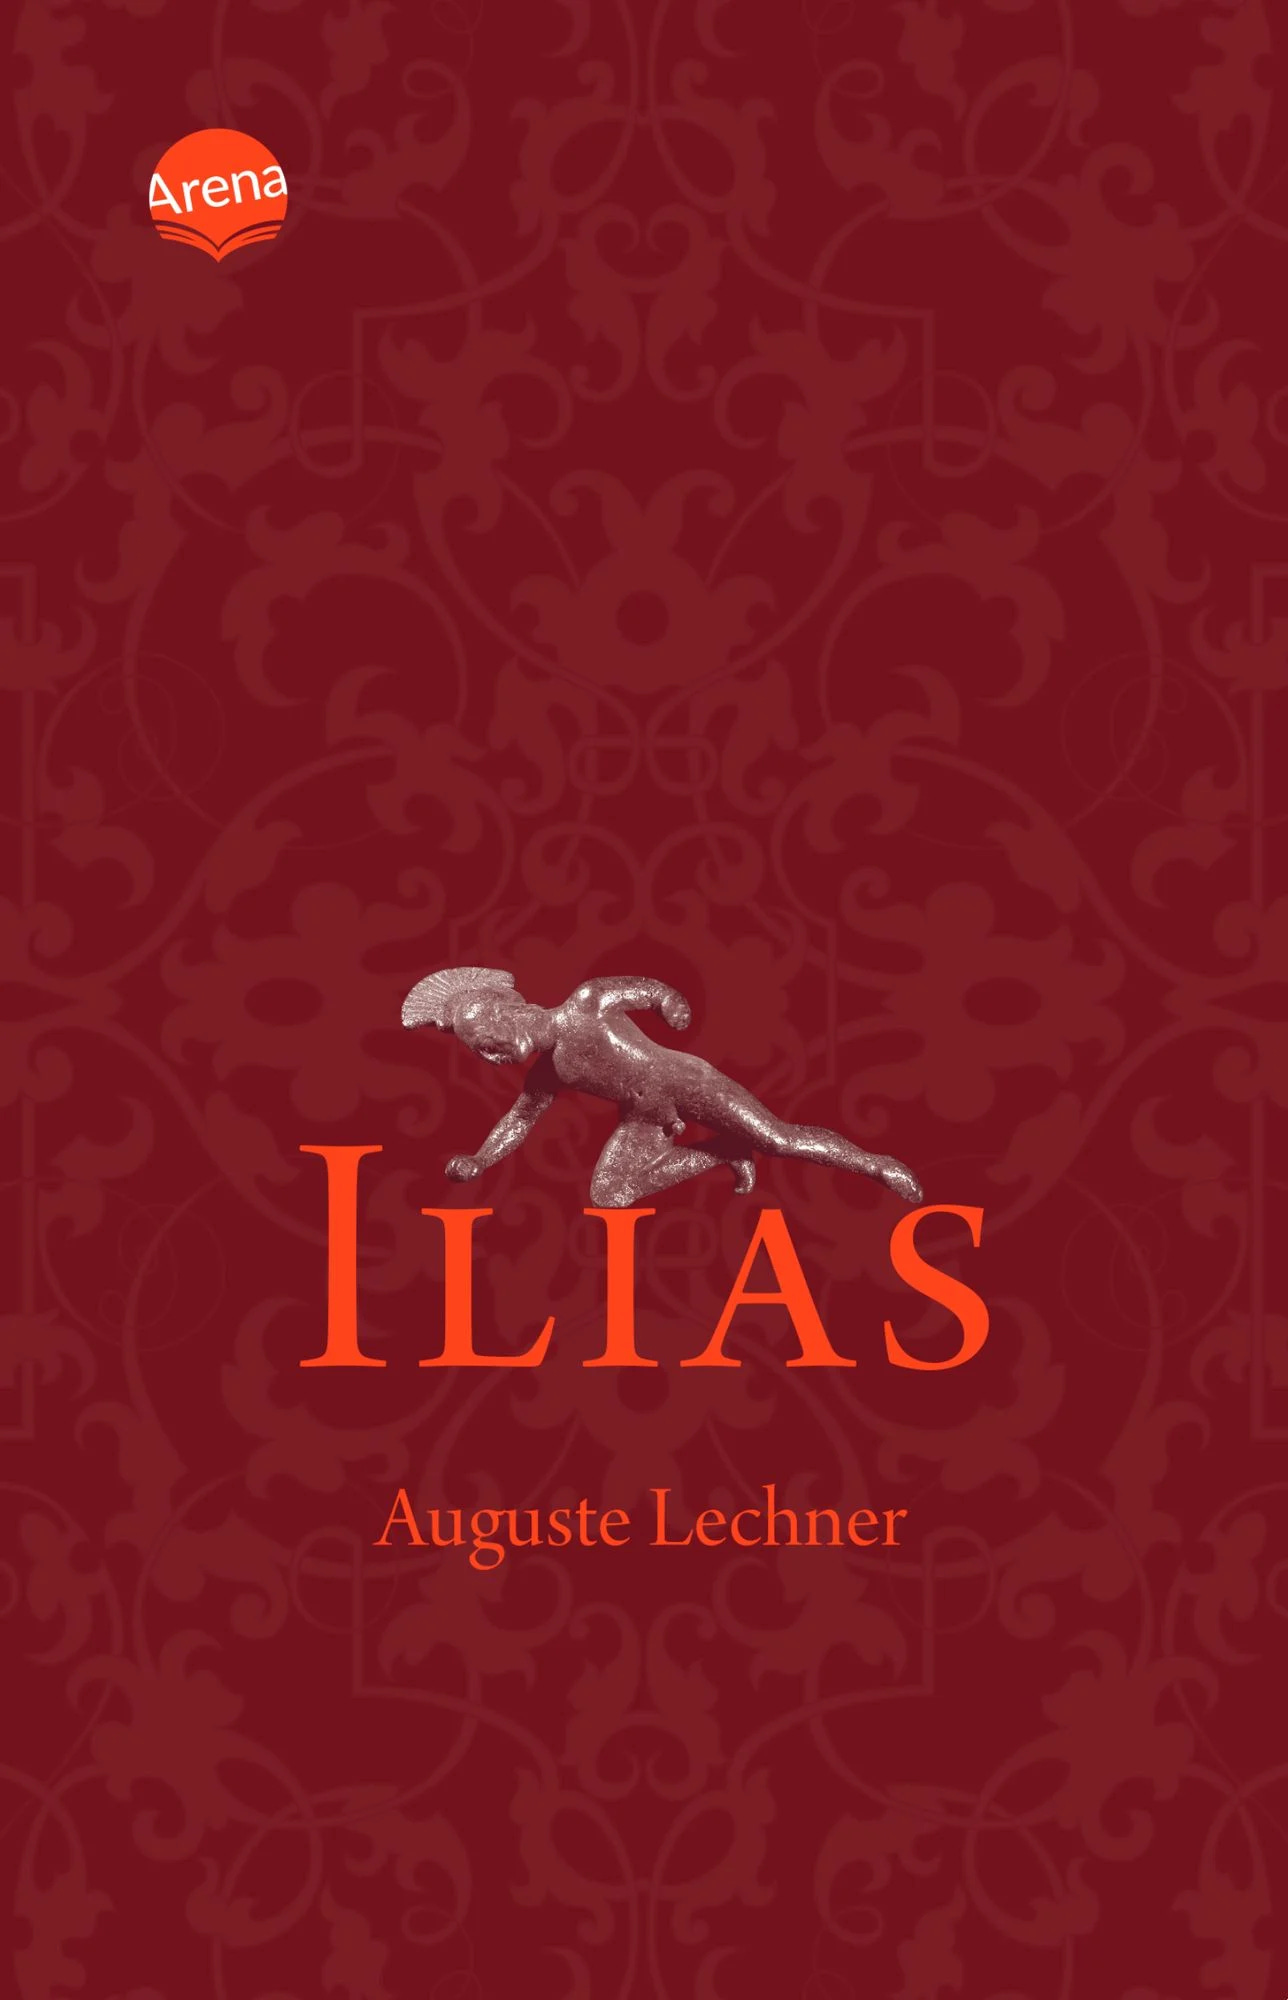 Ilias von Auguste Lechner - Umfassende Zusammenfassung und tiefgründige Analyse